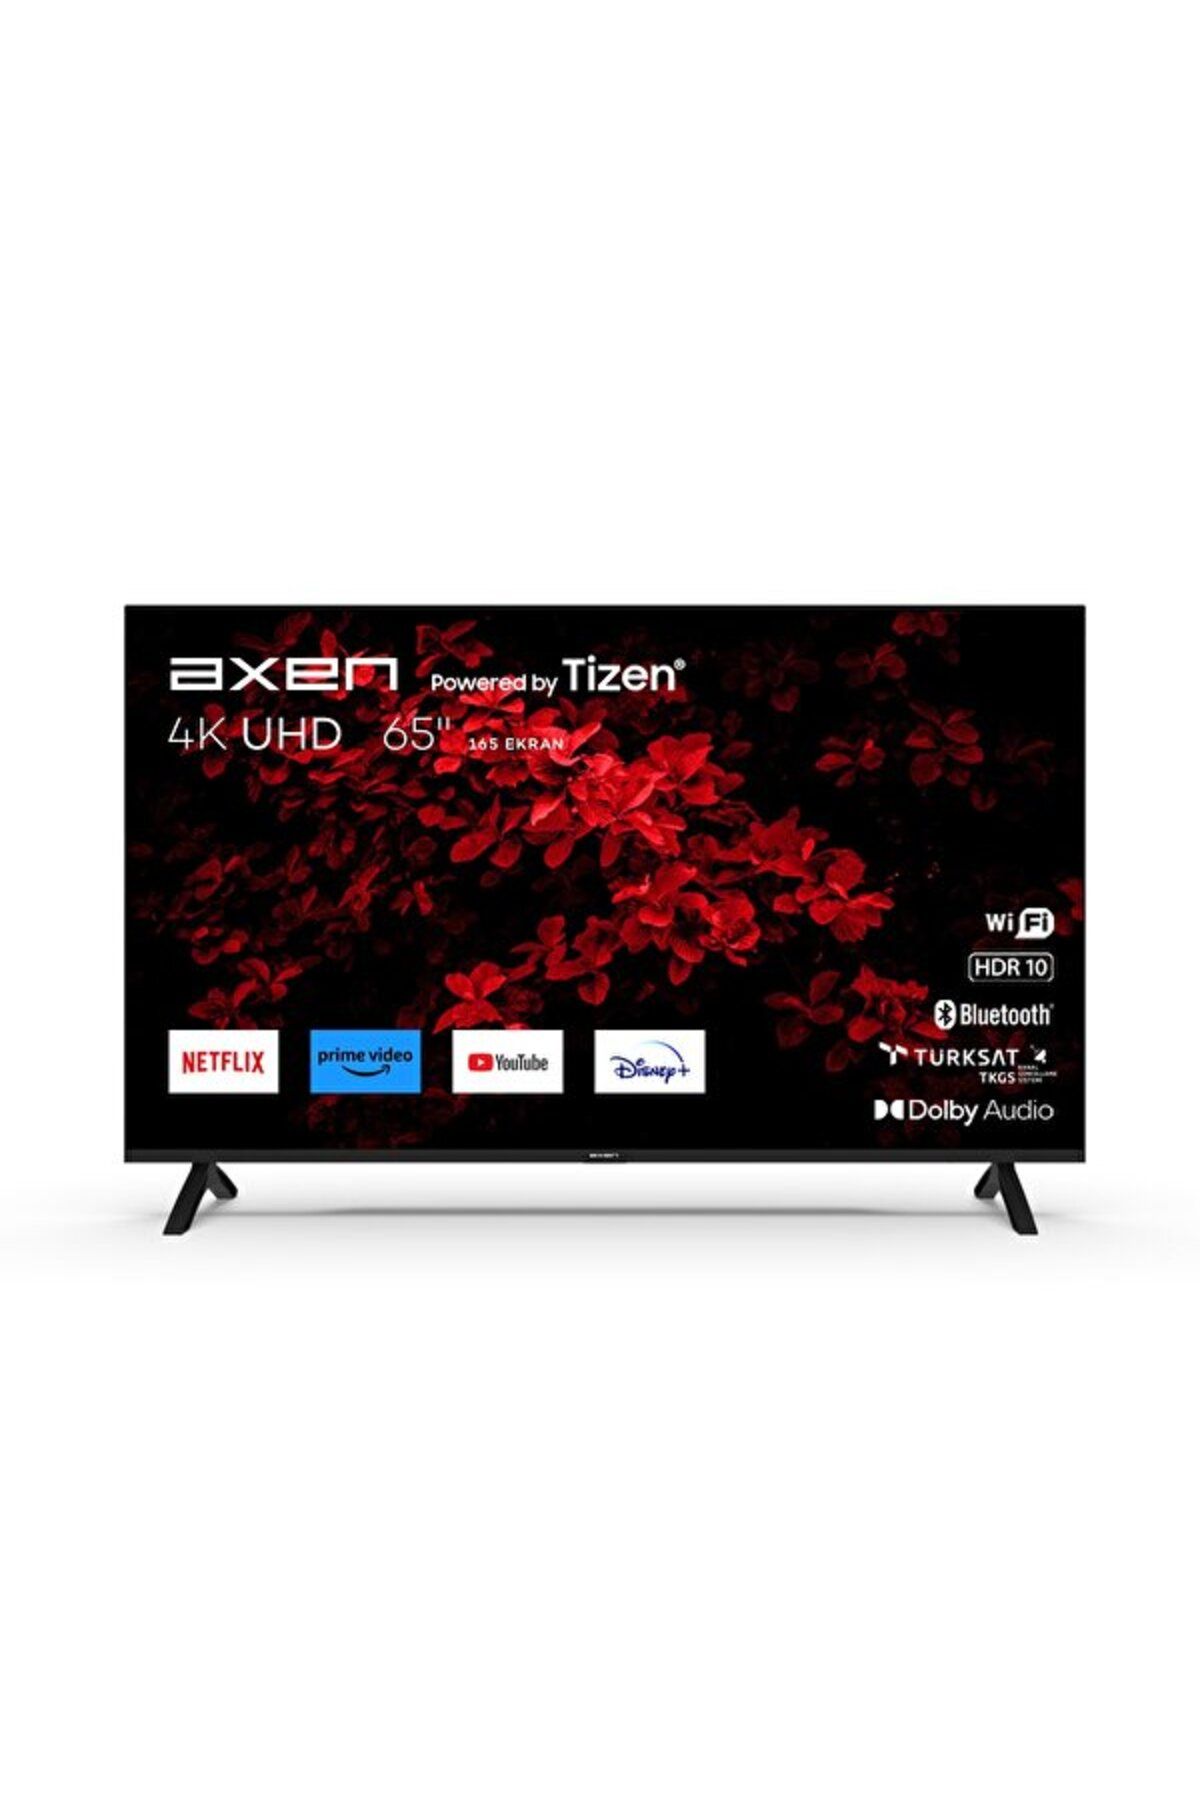 Axen Ax65fmn503 65"165 Ekran Uhd Tizen Smart Led Tv